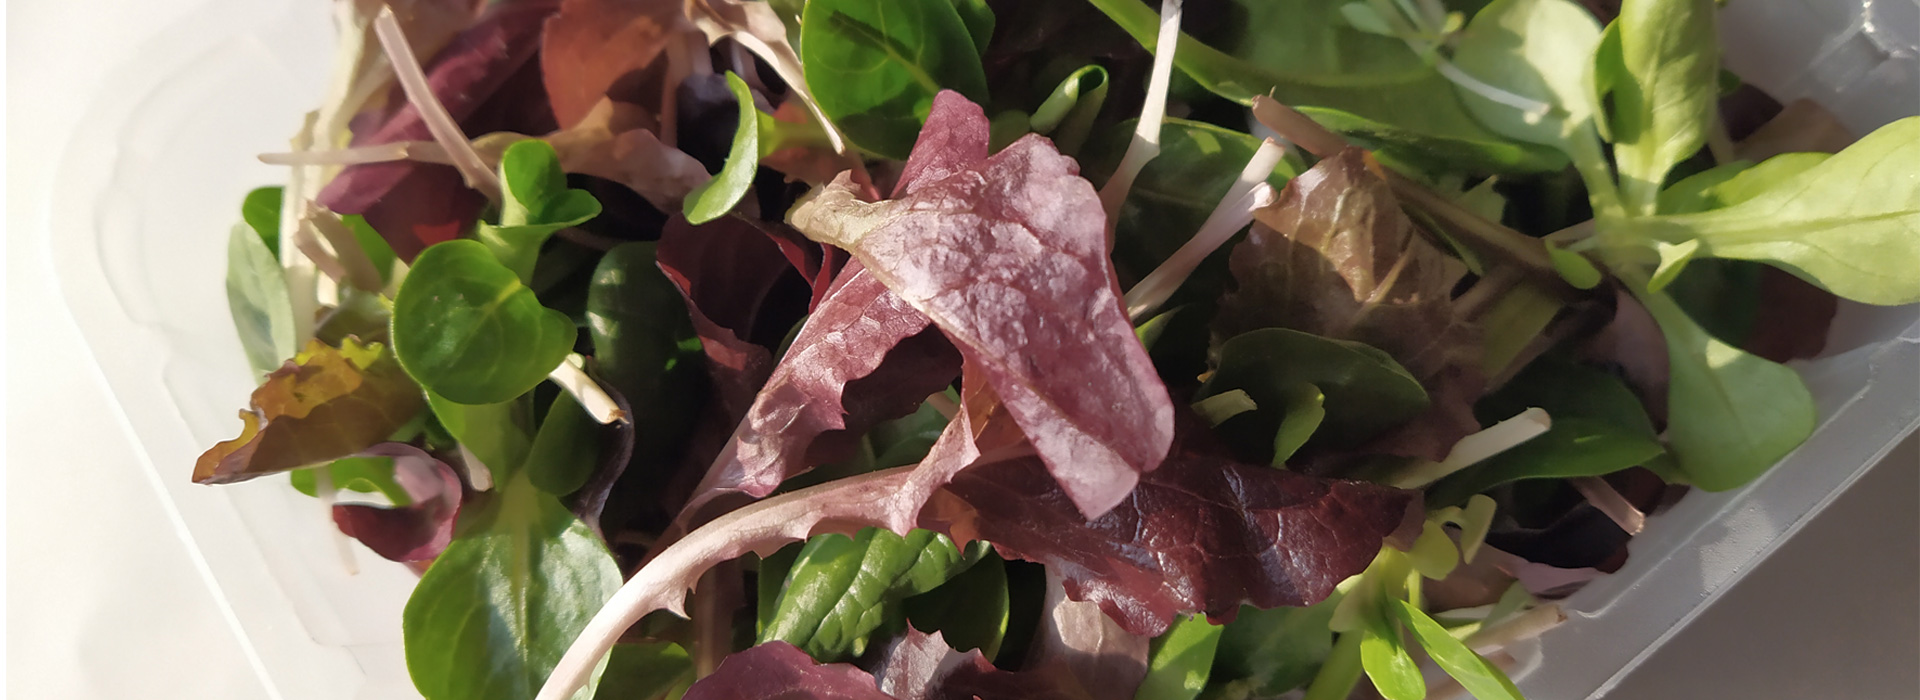 Salad Baby Leaf